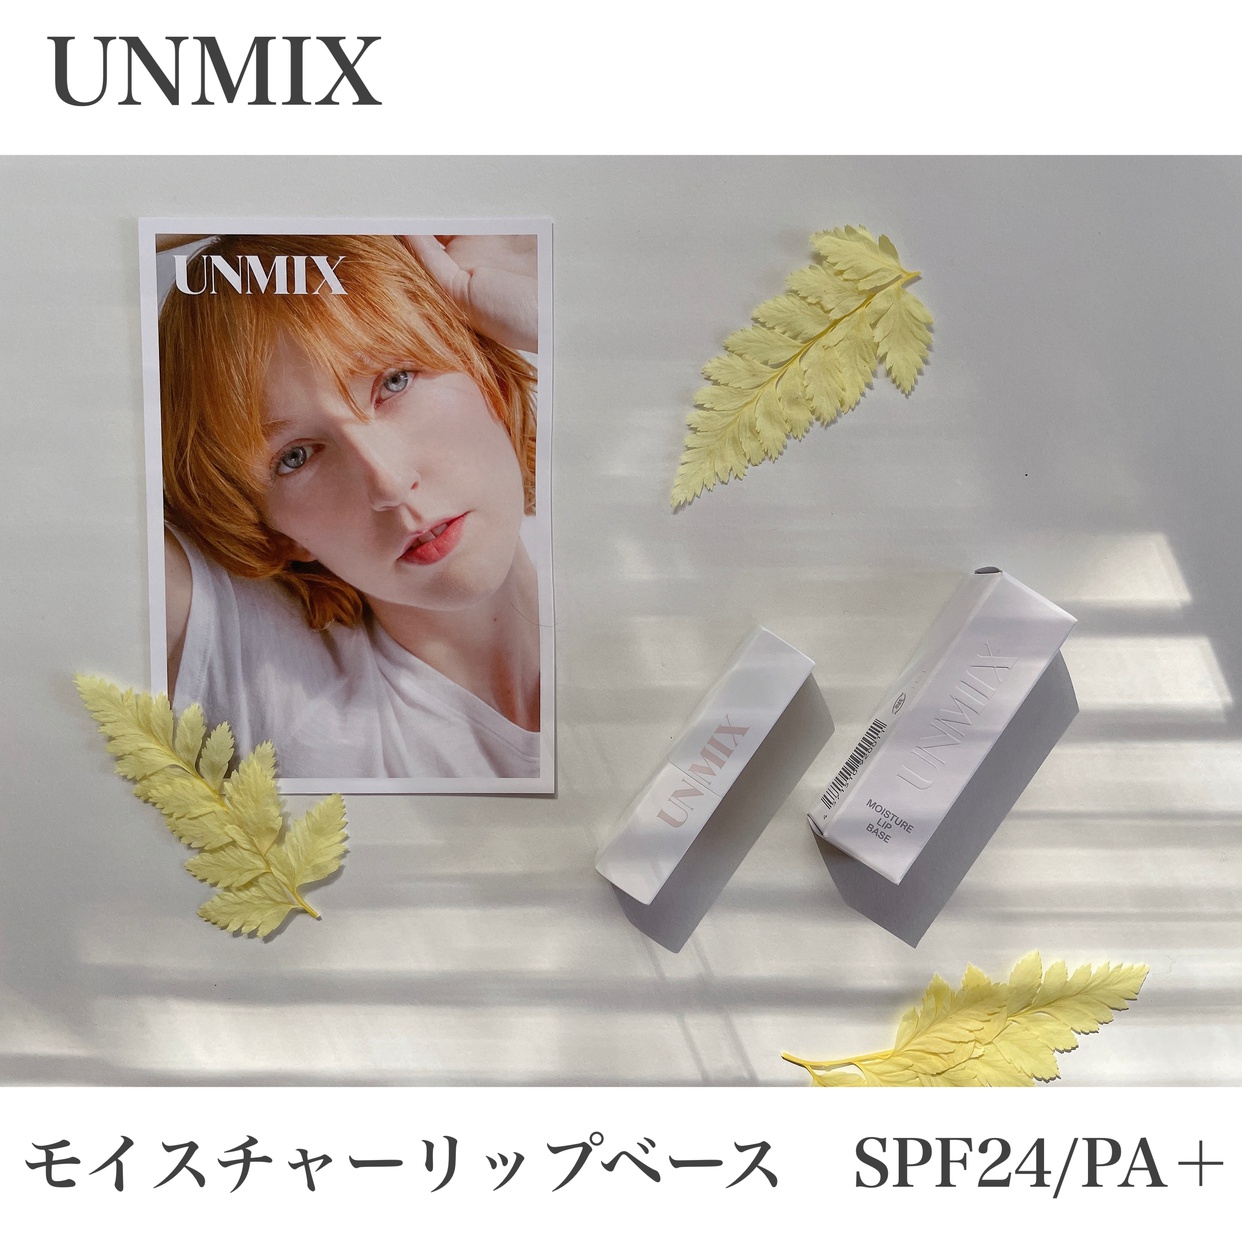 UNMIX(アンミックス) モイスチャー リップ ベースを使ったmaa_kさんのクチコミ画像1